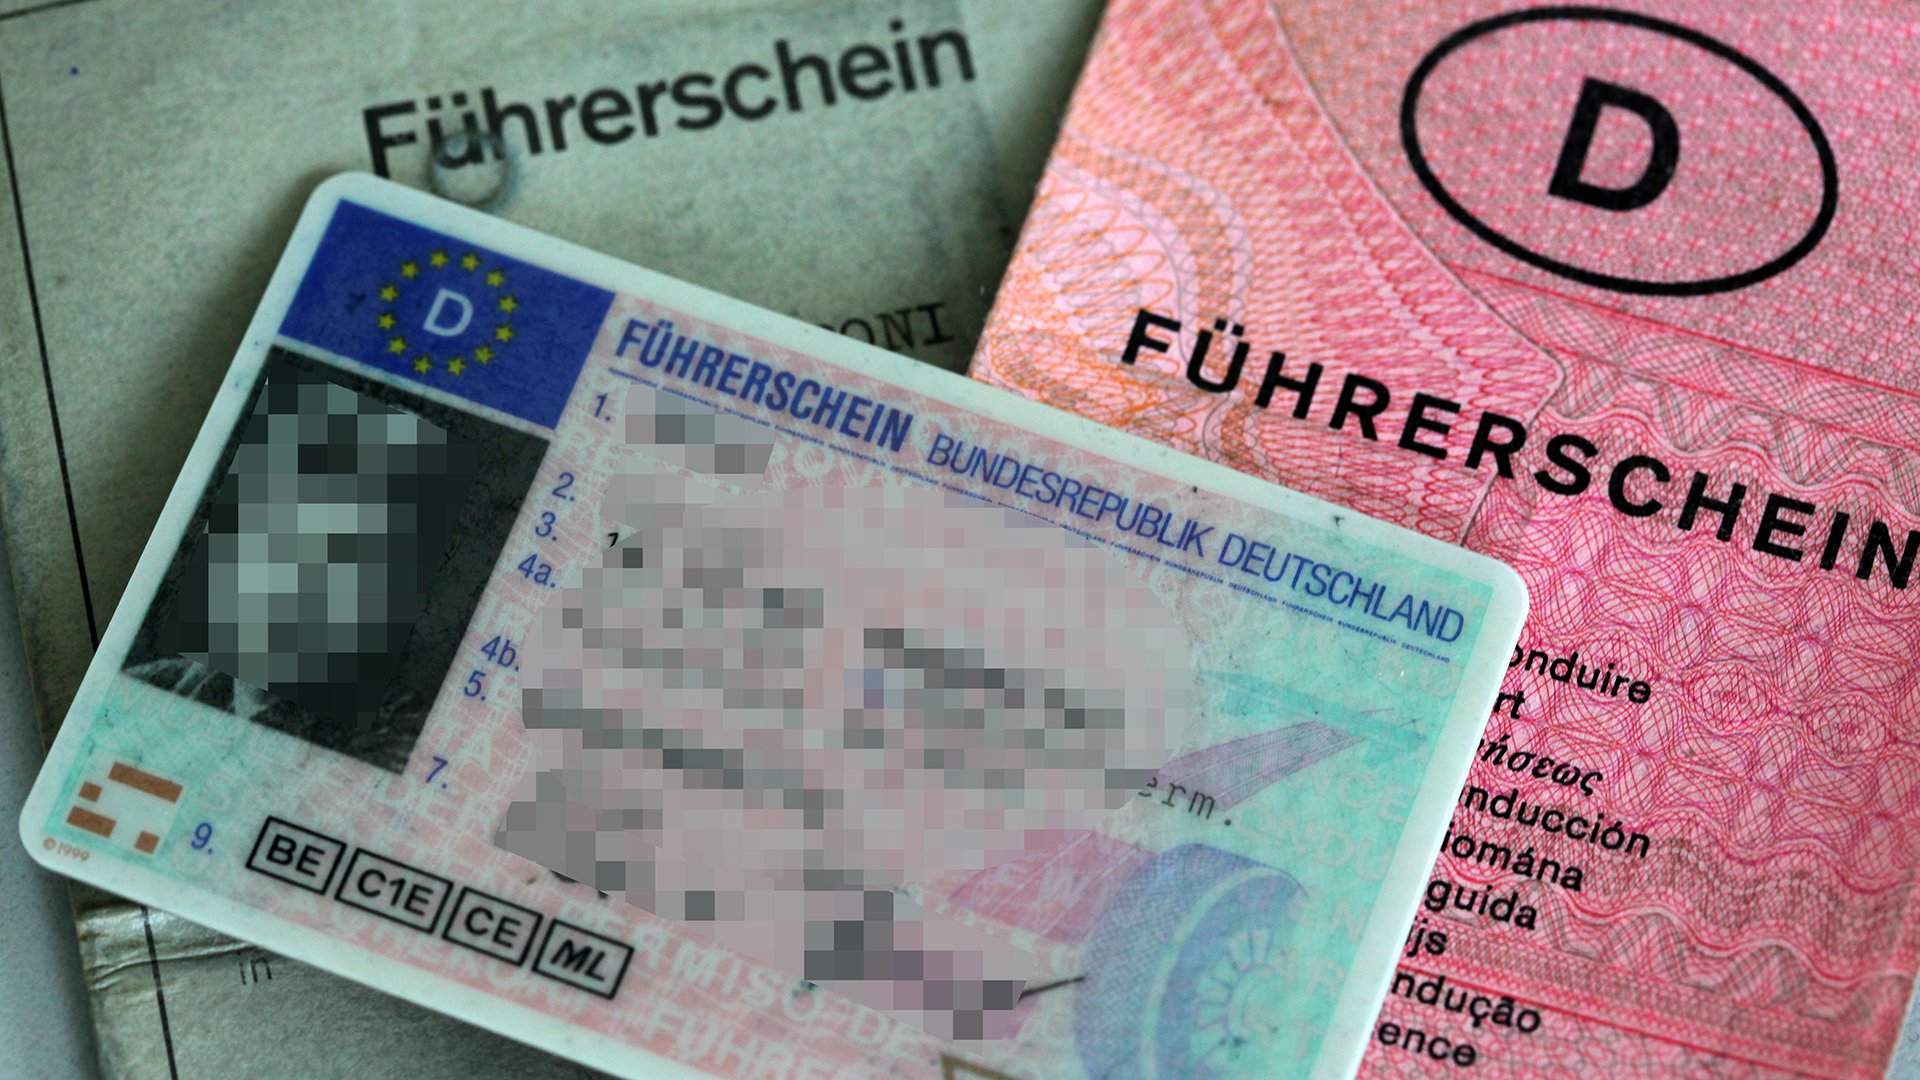 Führerschein cover image